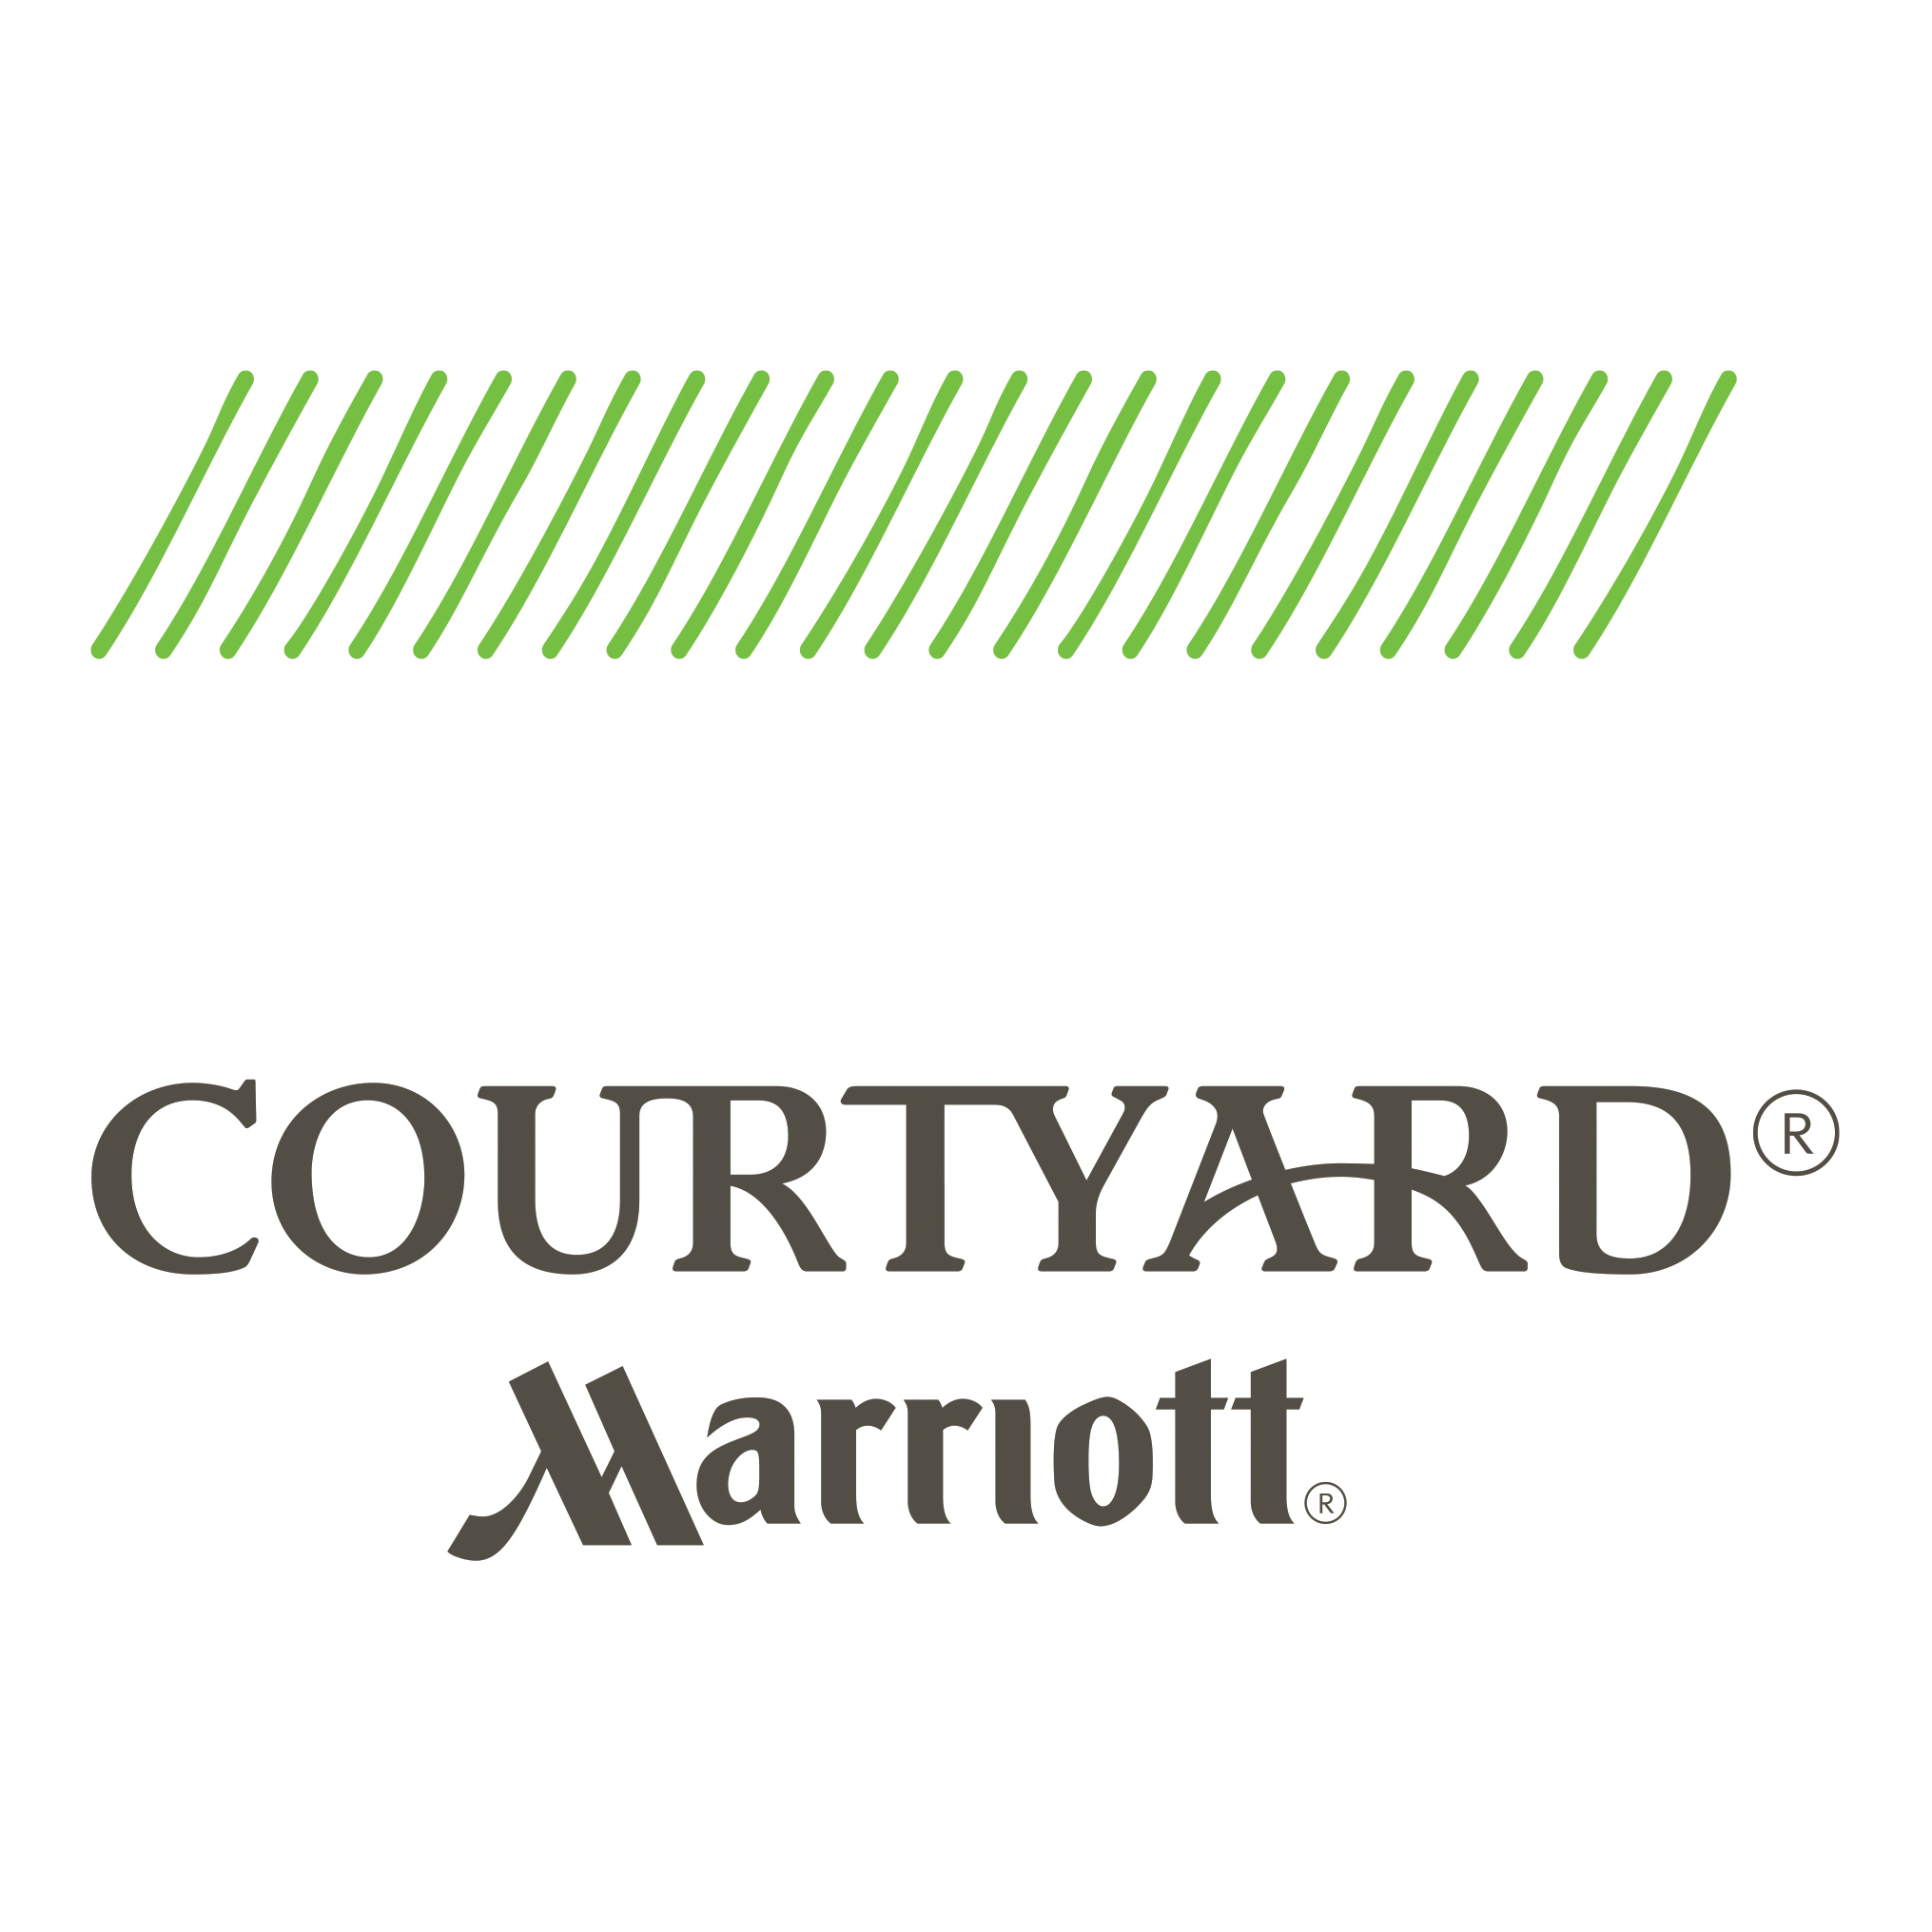 Courtyard by Marriott Houston Northwest Logo